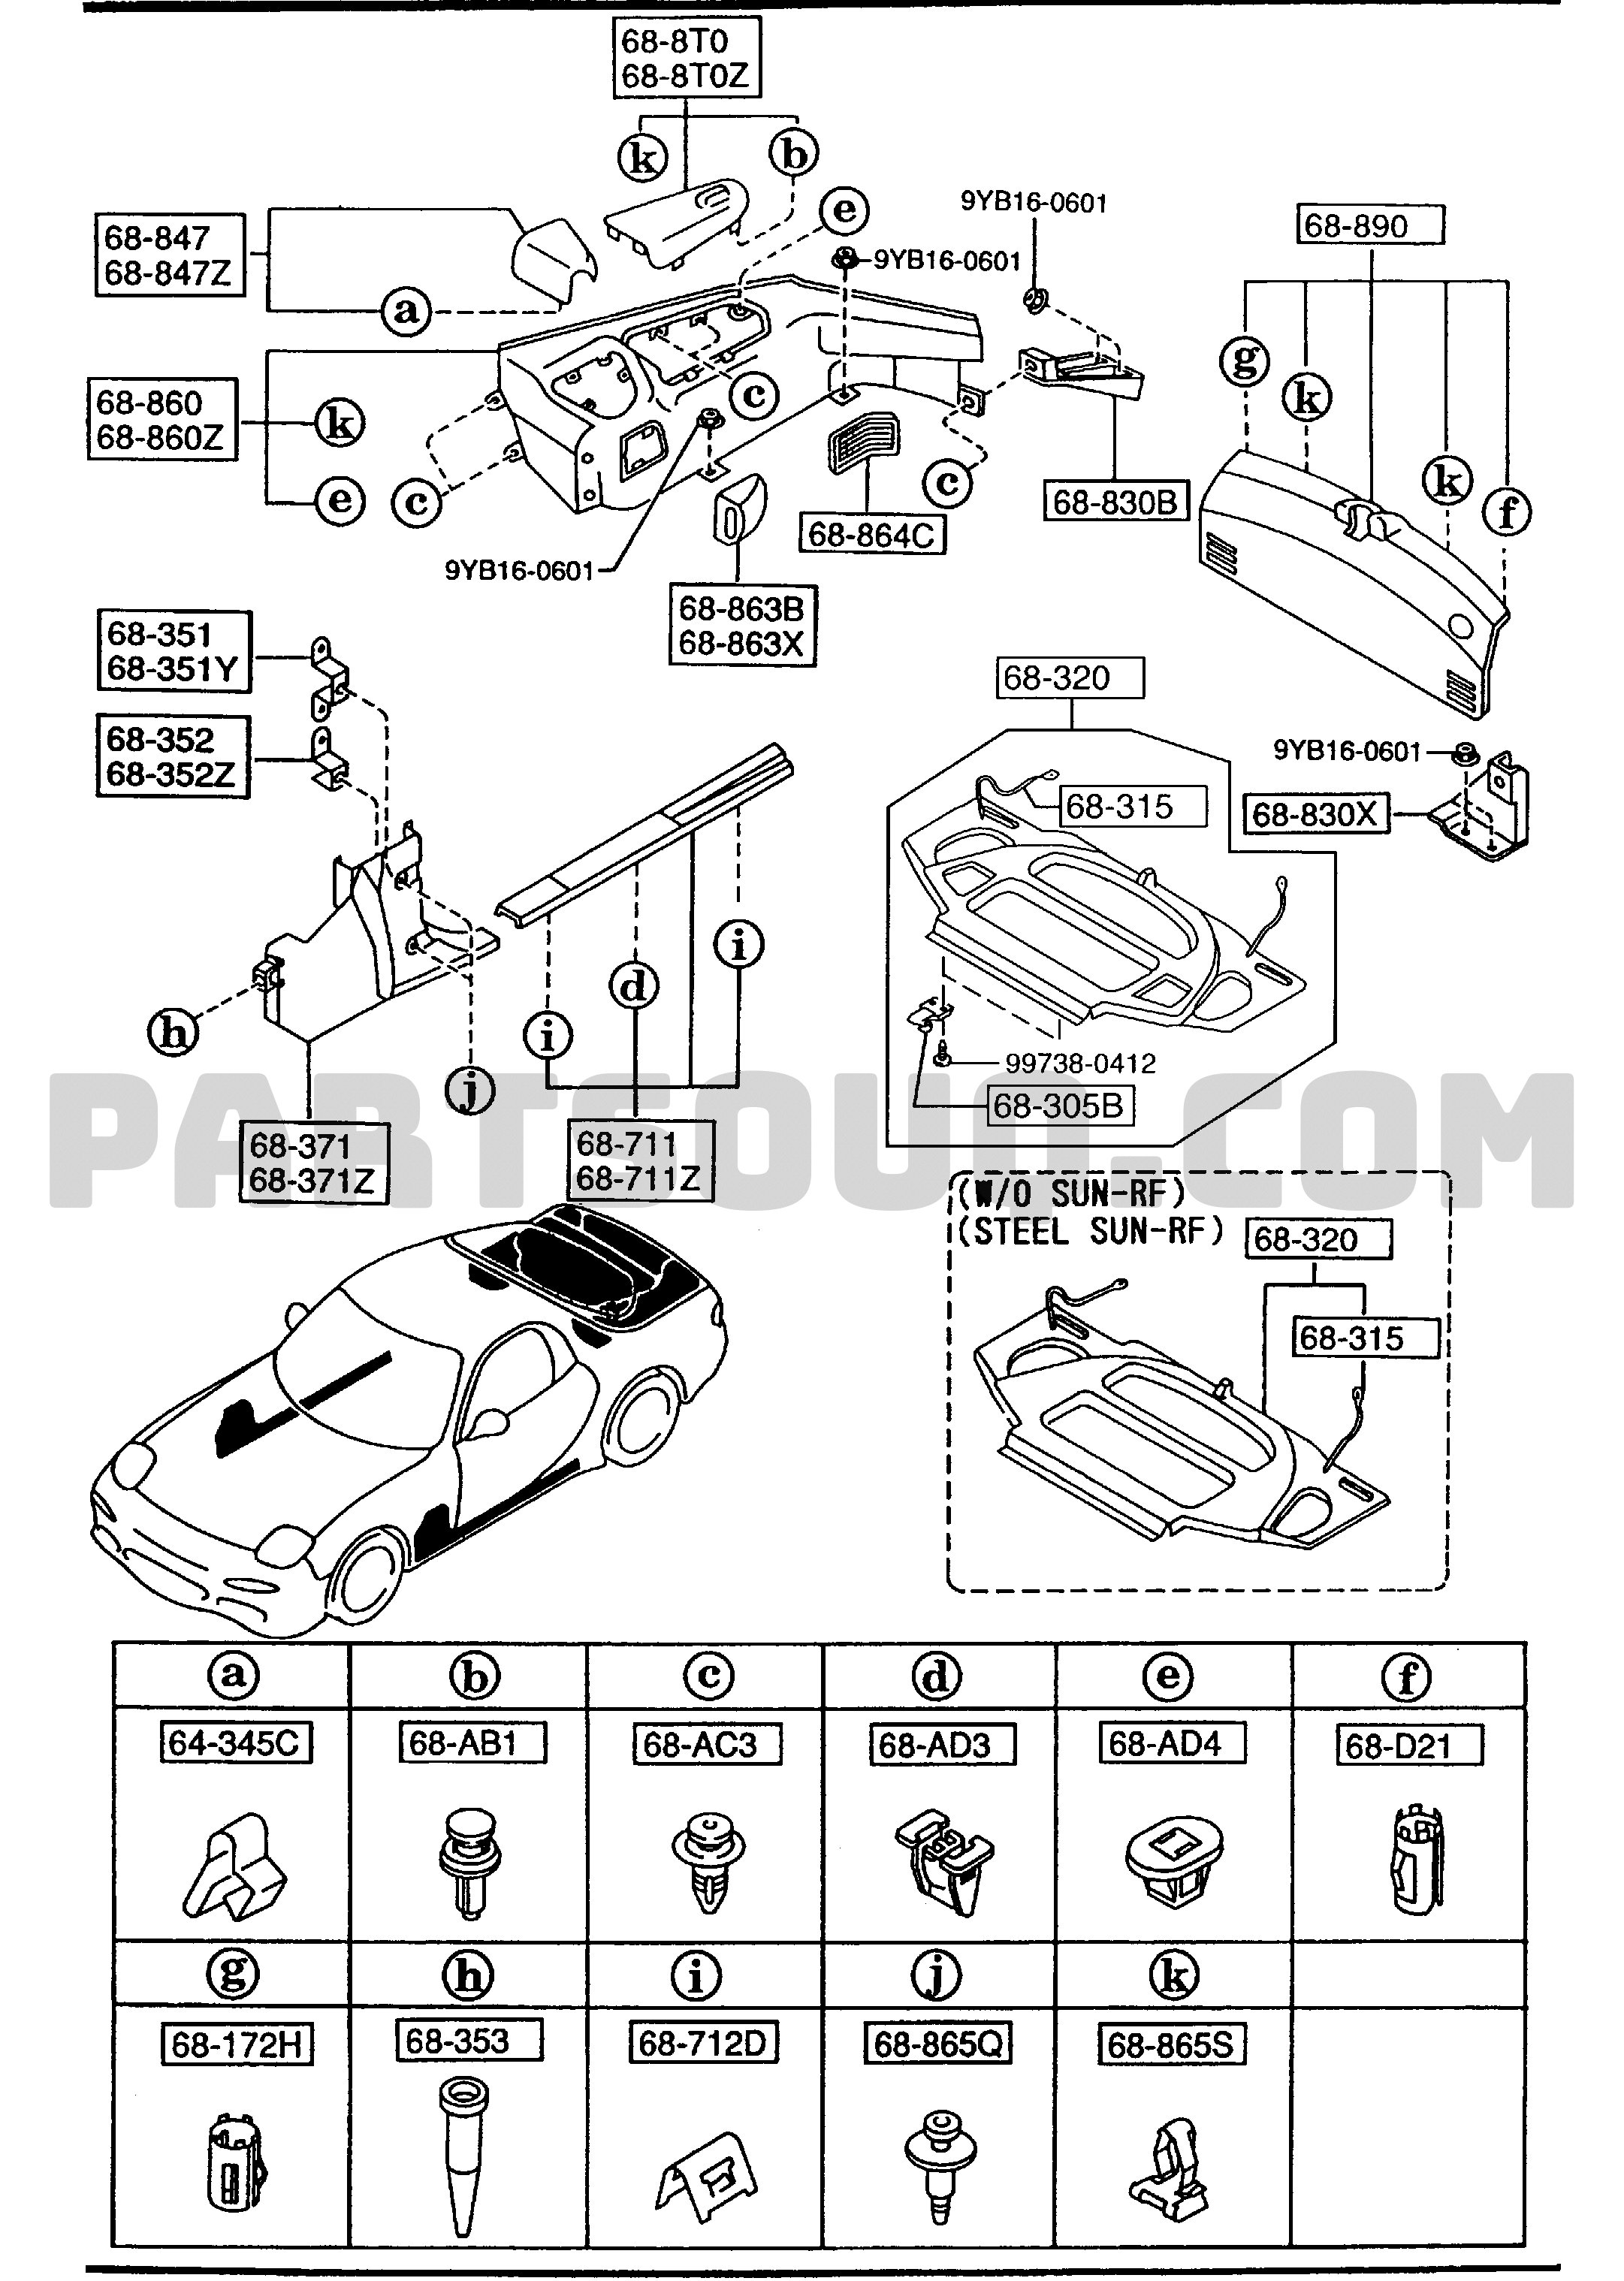 6840 - TRIMS & SCUFF PLATES 01/01 | Mazda RX-7 1995 AUFA06 | Parts